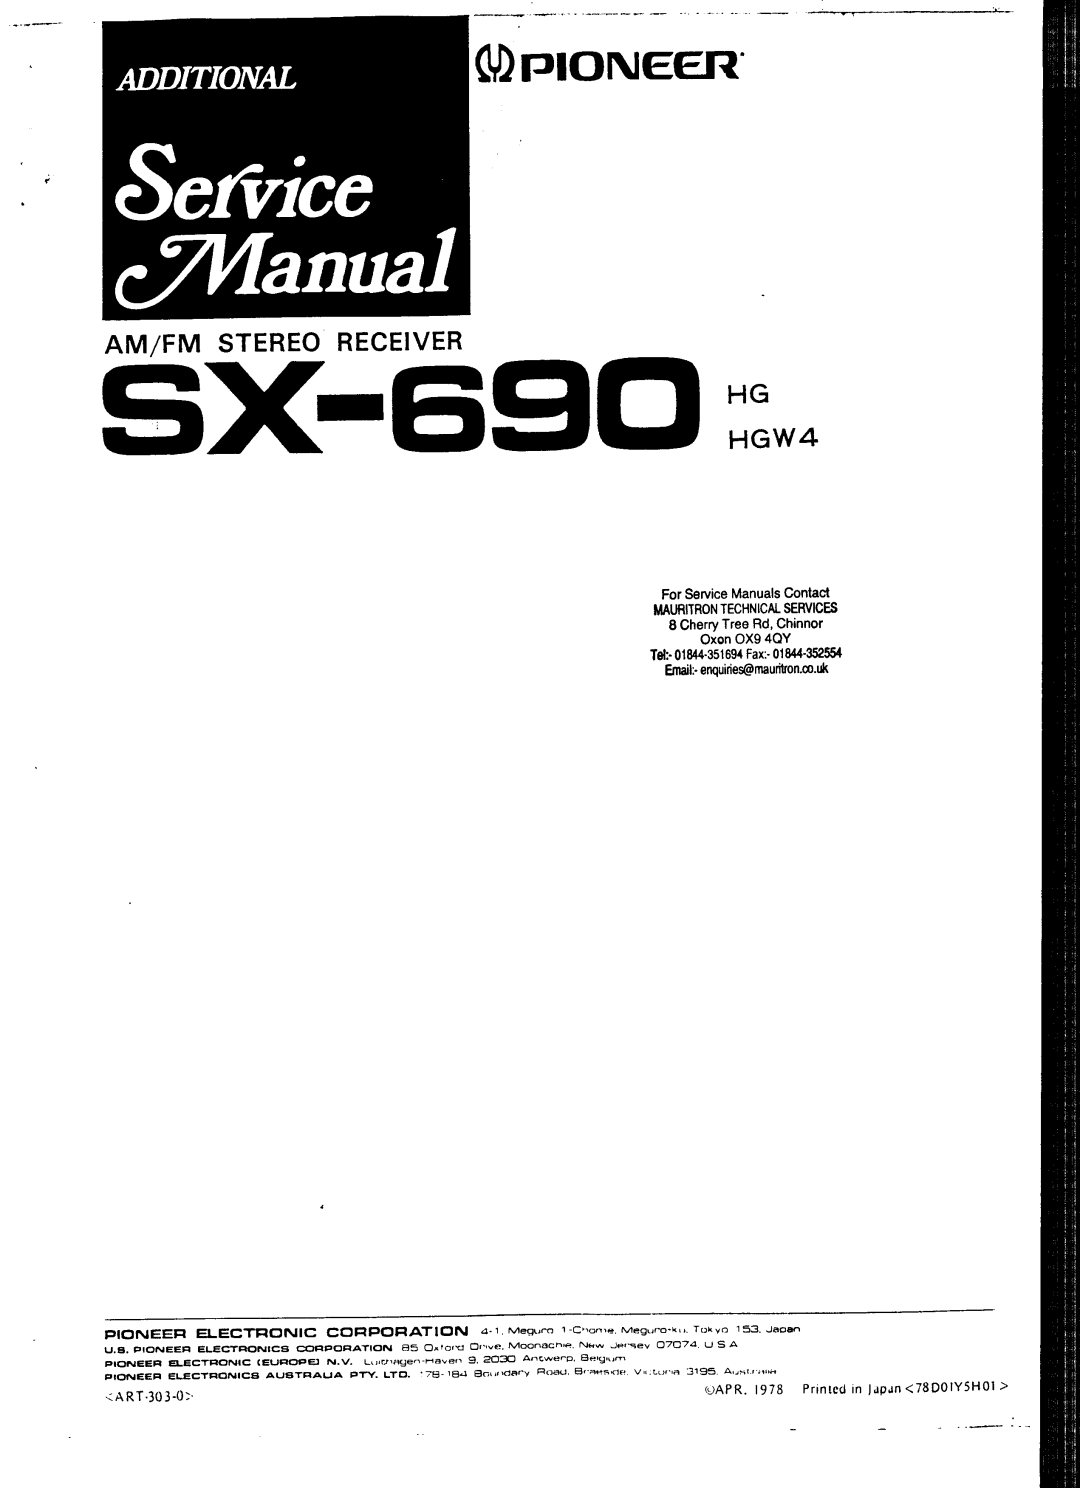 Pioneer HGW4 manual 